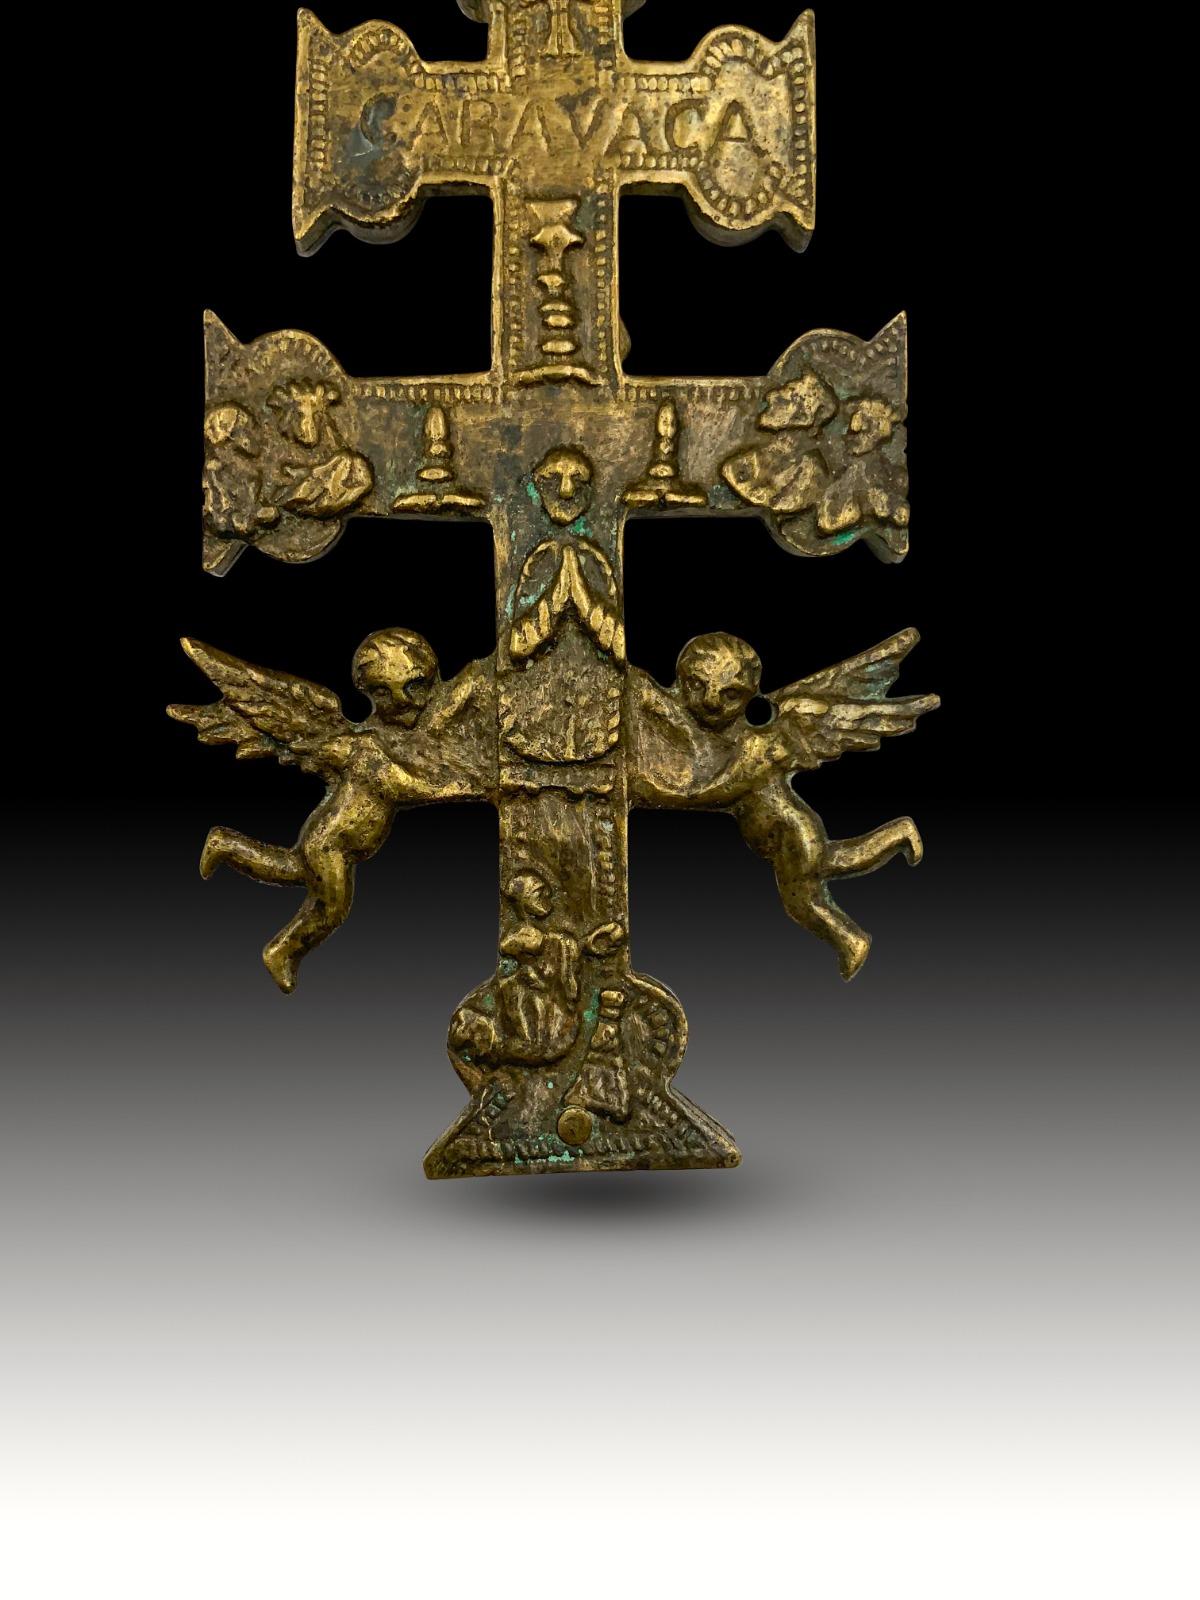 Croix de Caravaca xviiie siècle
Très belle croix de Caravaca en bronze. 17ème siècle. Dimensions : 12 x 6cm
Bon état.